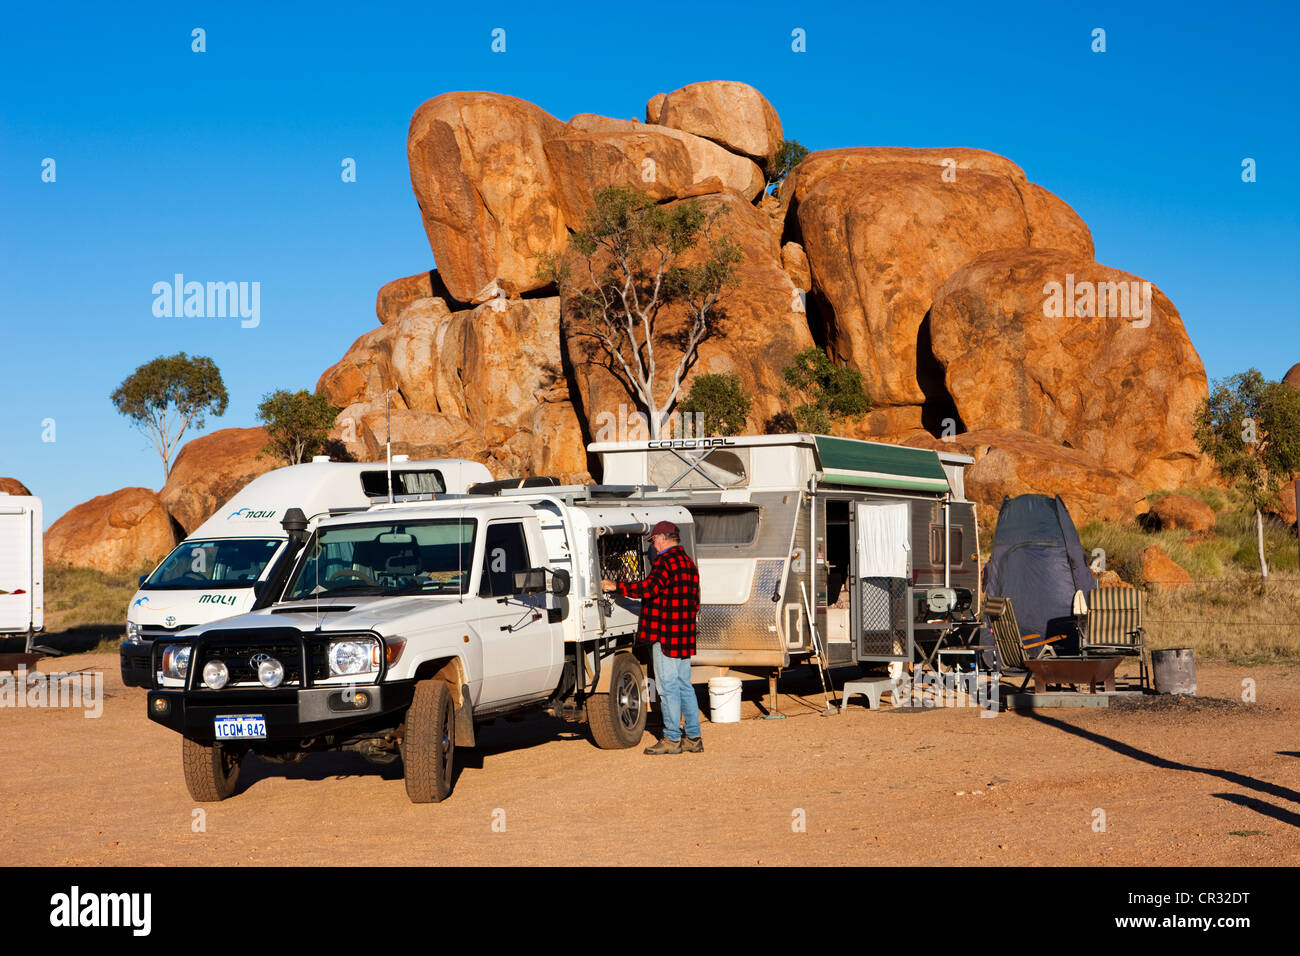 Caravan in un campeggio, diavoli marmi, Territorio del Nord, l'Australia Foto Stock